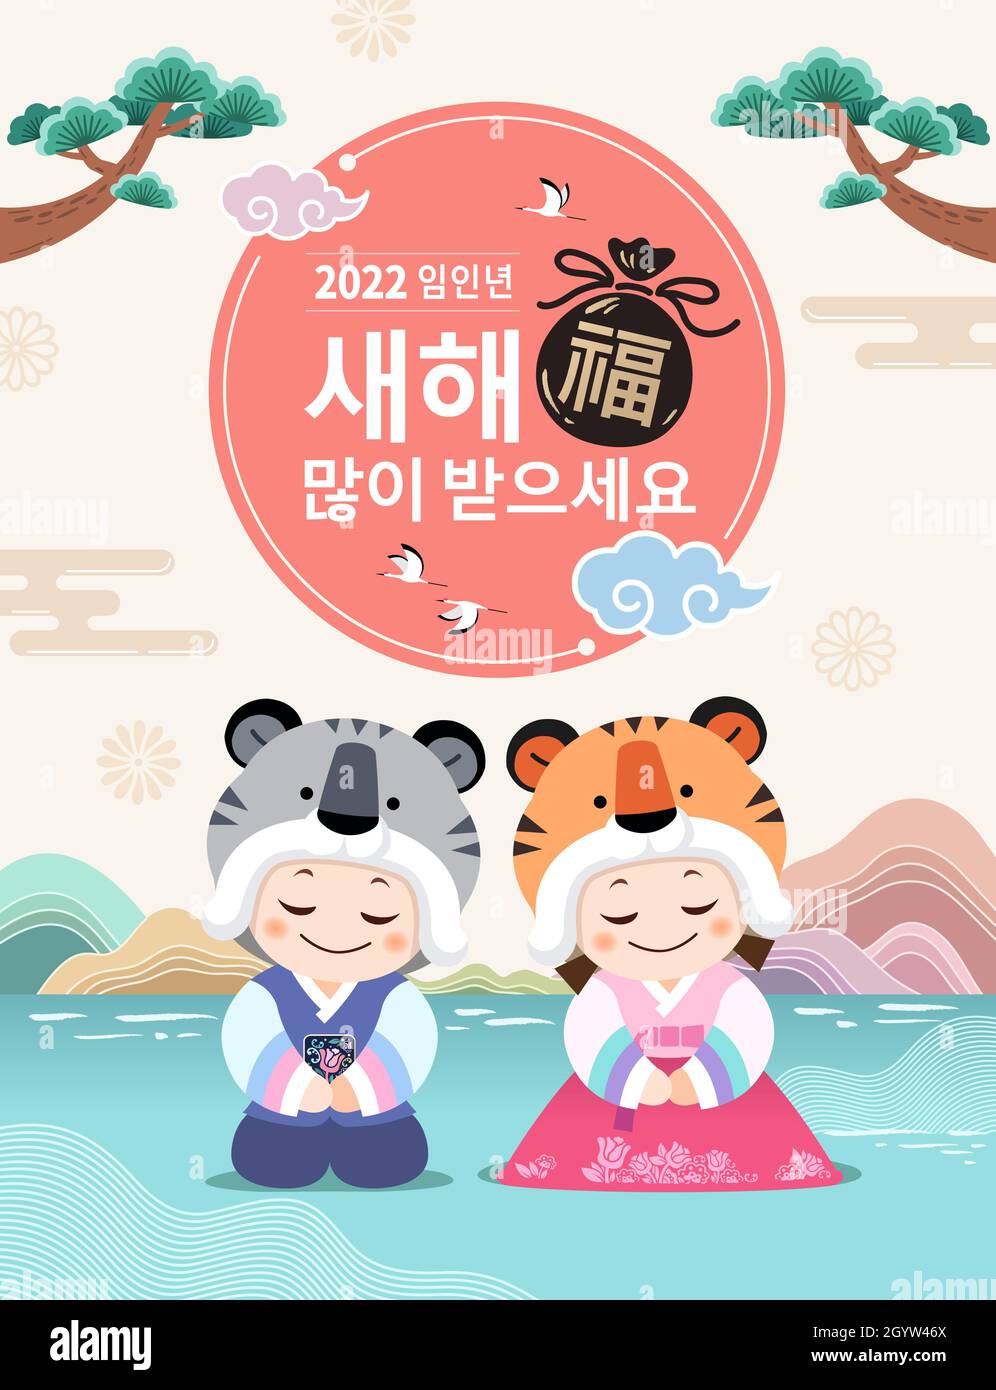 Nouvel an coréen.Les enfants portant un hanbok, comme un hanbok et un chapeau de tigre, accueillent la nouvelle année.Bonne année, traduction coréenne. Illustration de Vecteur